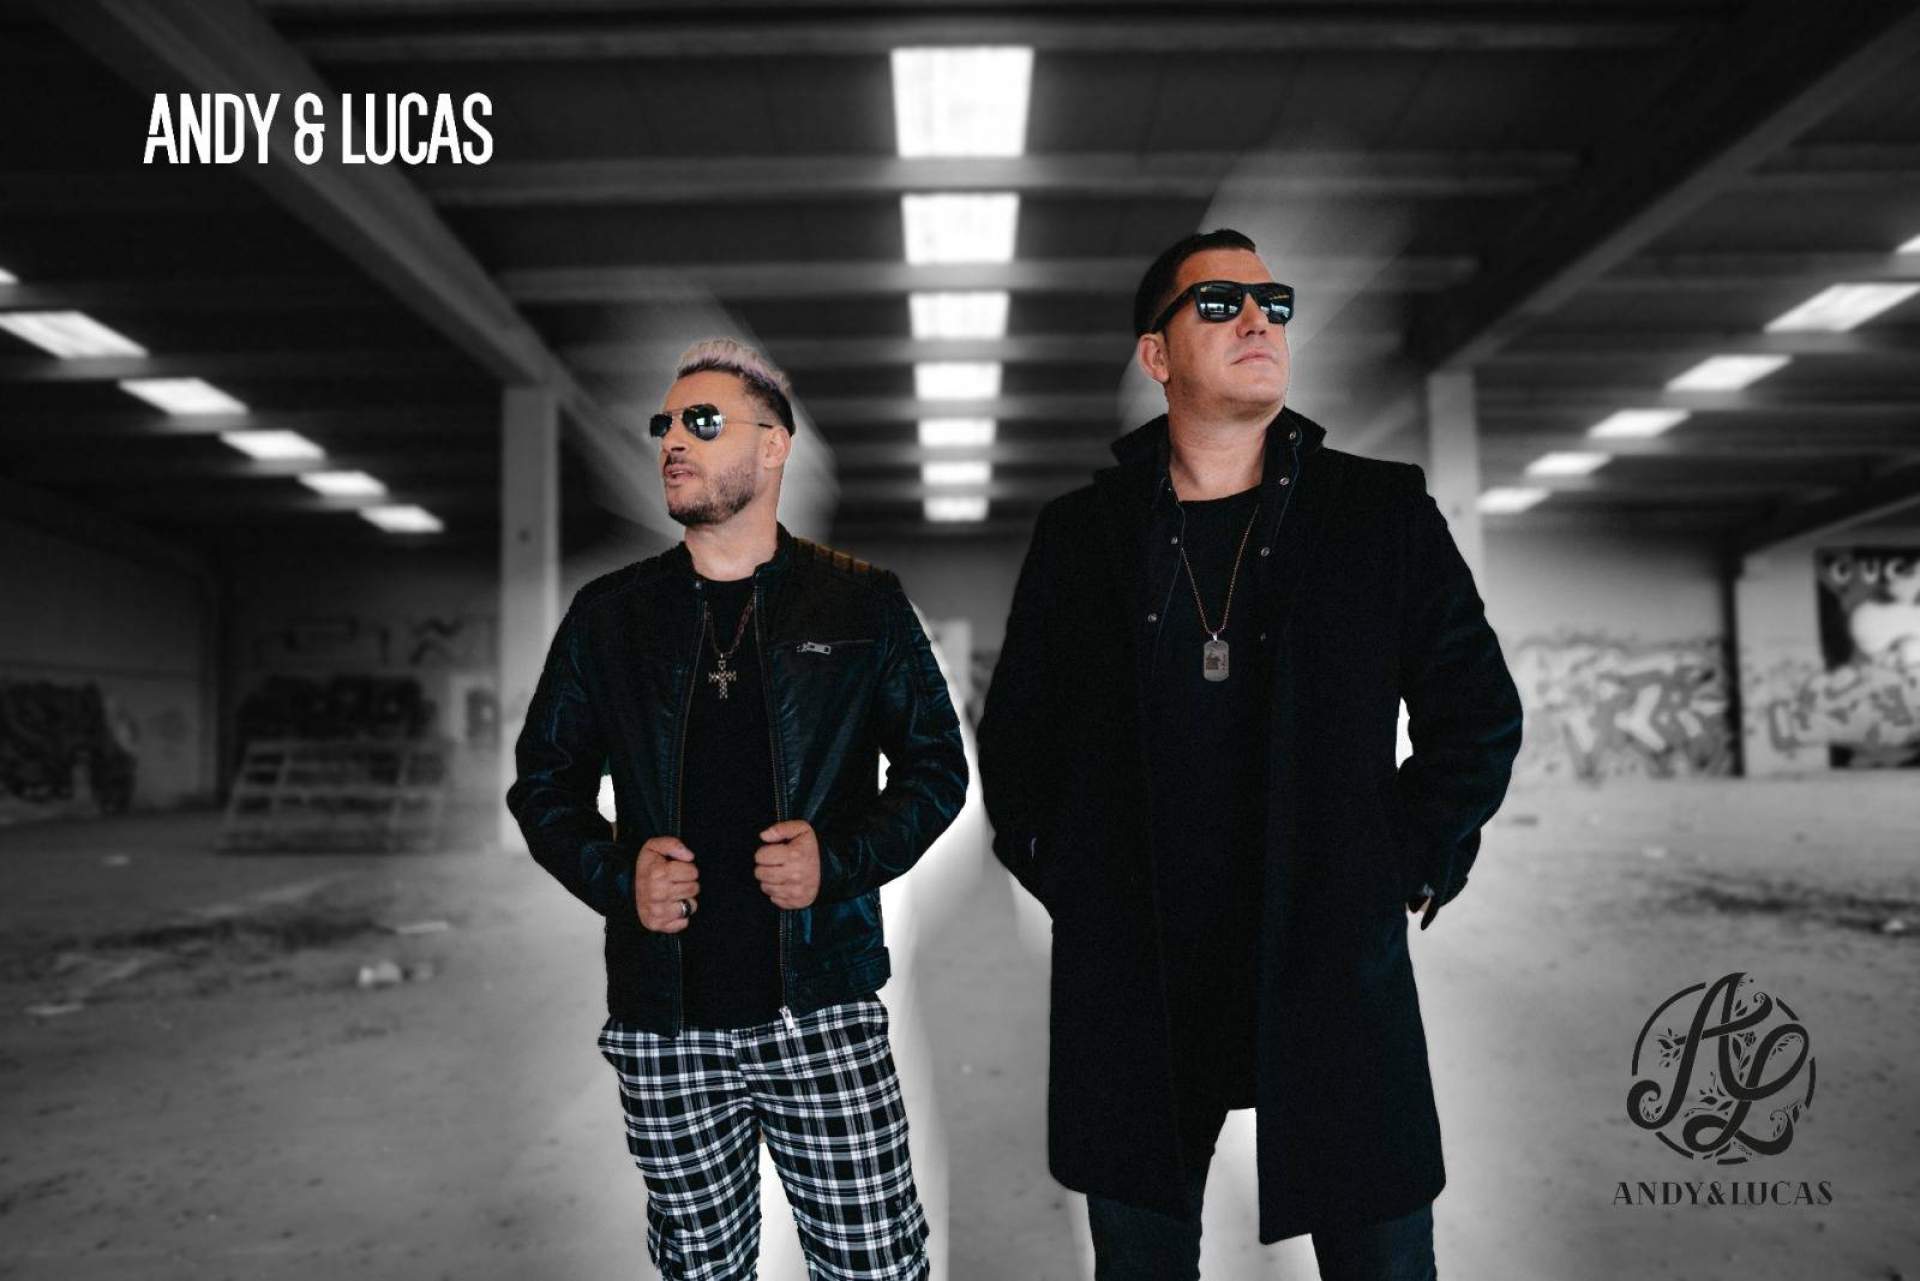 Andy & Lucas celebra 20 años de carrera musical con el nuevo single ‘Me estoy volviendo loco’